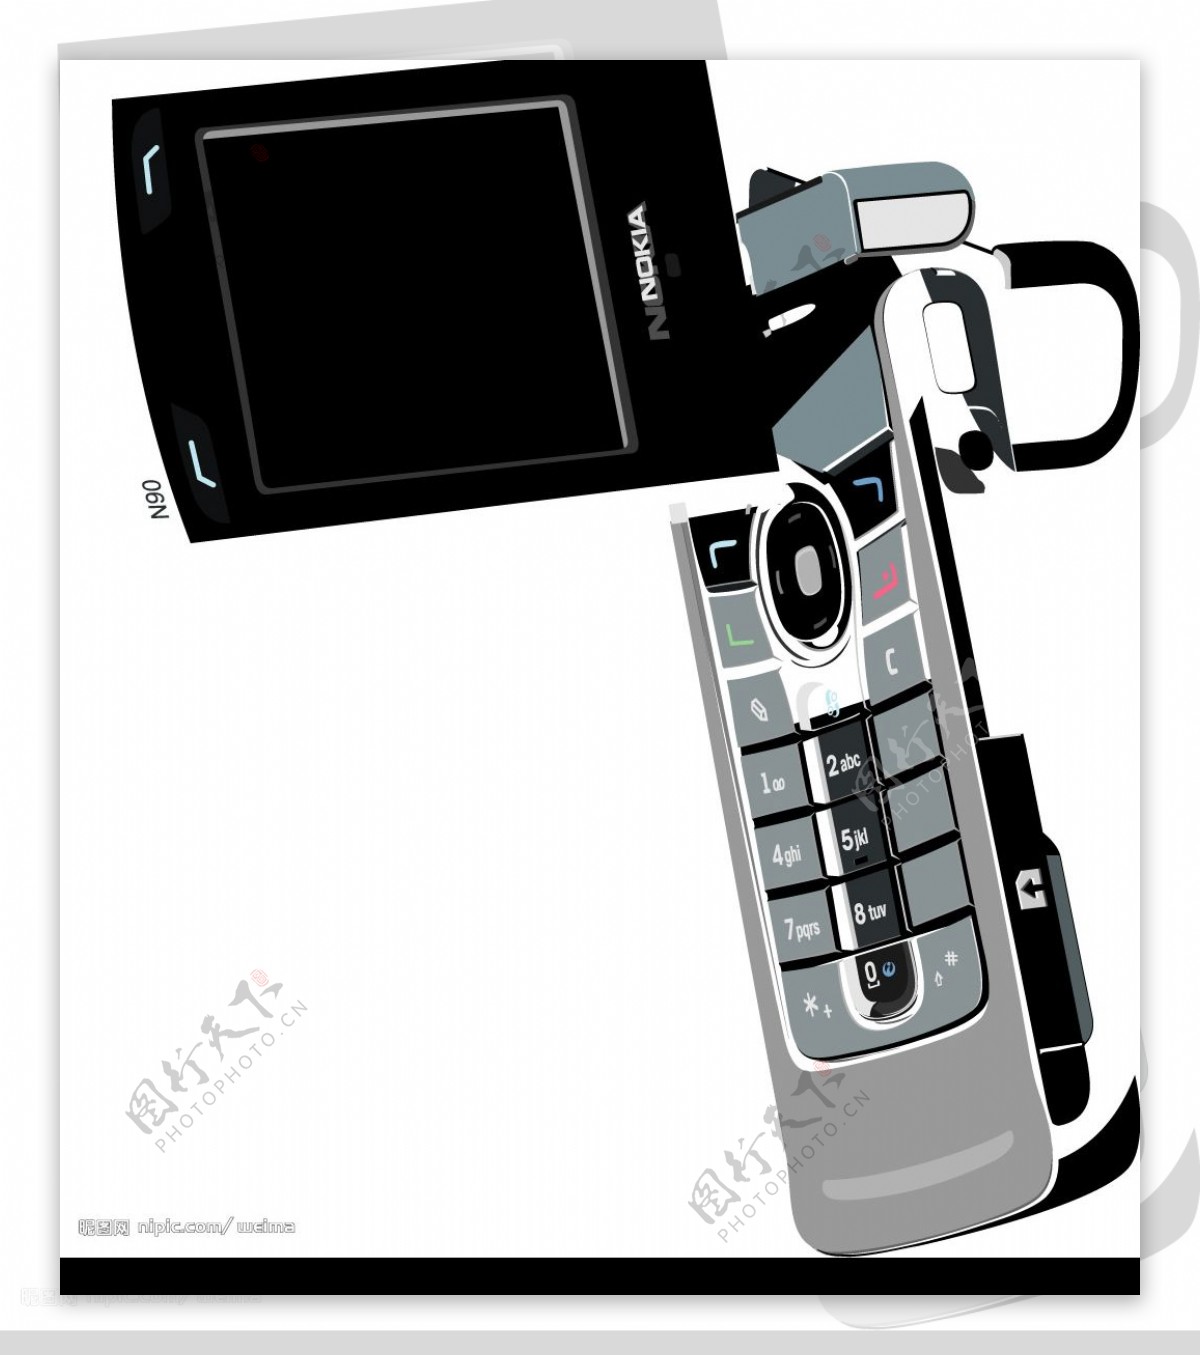 诺基亚n90手机图片